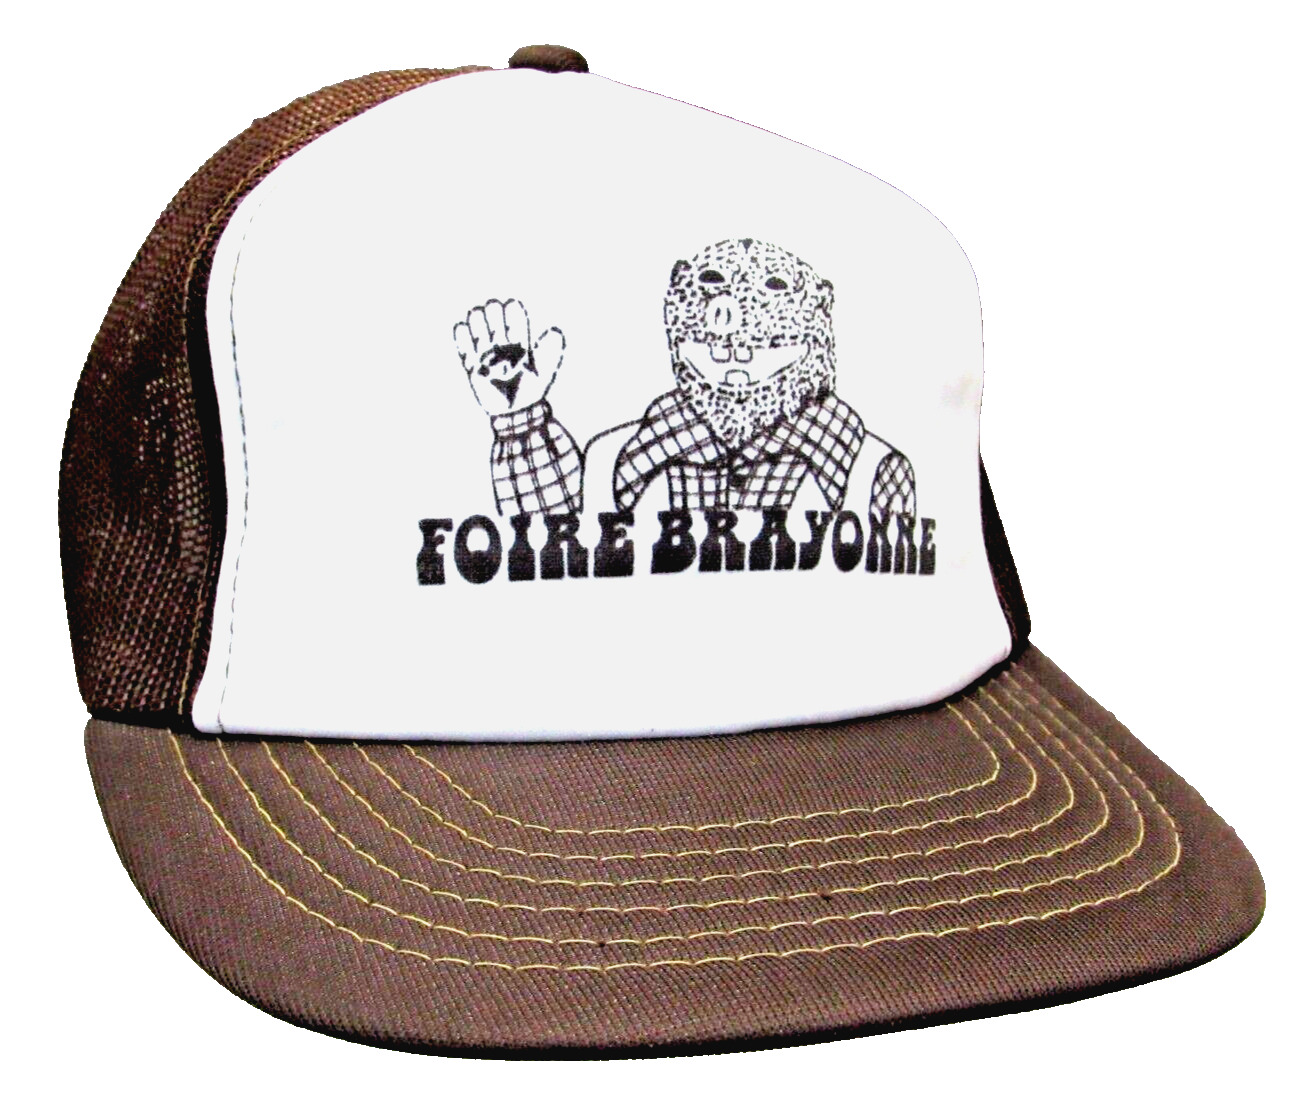  Foam Front Mesh Back Snap Back Foire Brayonne Trucker Hat